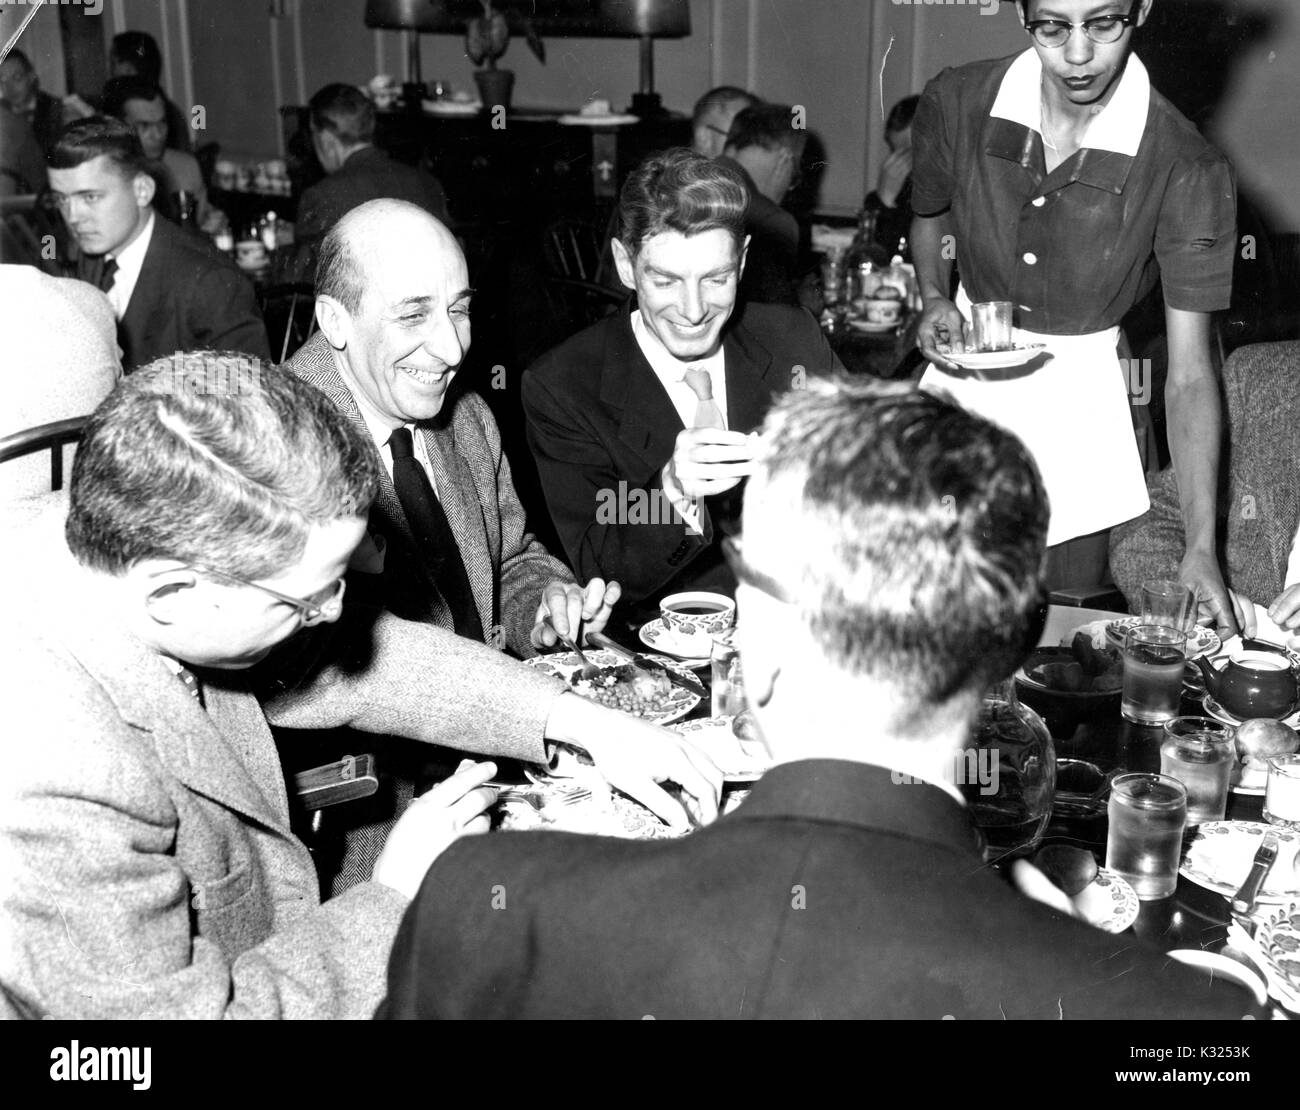 Bei einem Abendessen in der Johns Hopkins University Club Gebäude, männliche Mitglieder der Fakultät tragen Blazer Lächeln und Lachen rund um einen Esstisch, während eine weibliche Server erreicht eine Tasse Tee zu liefern, Baltimore, Maryland, 1955. Stockfoto